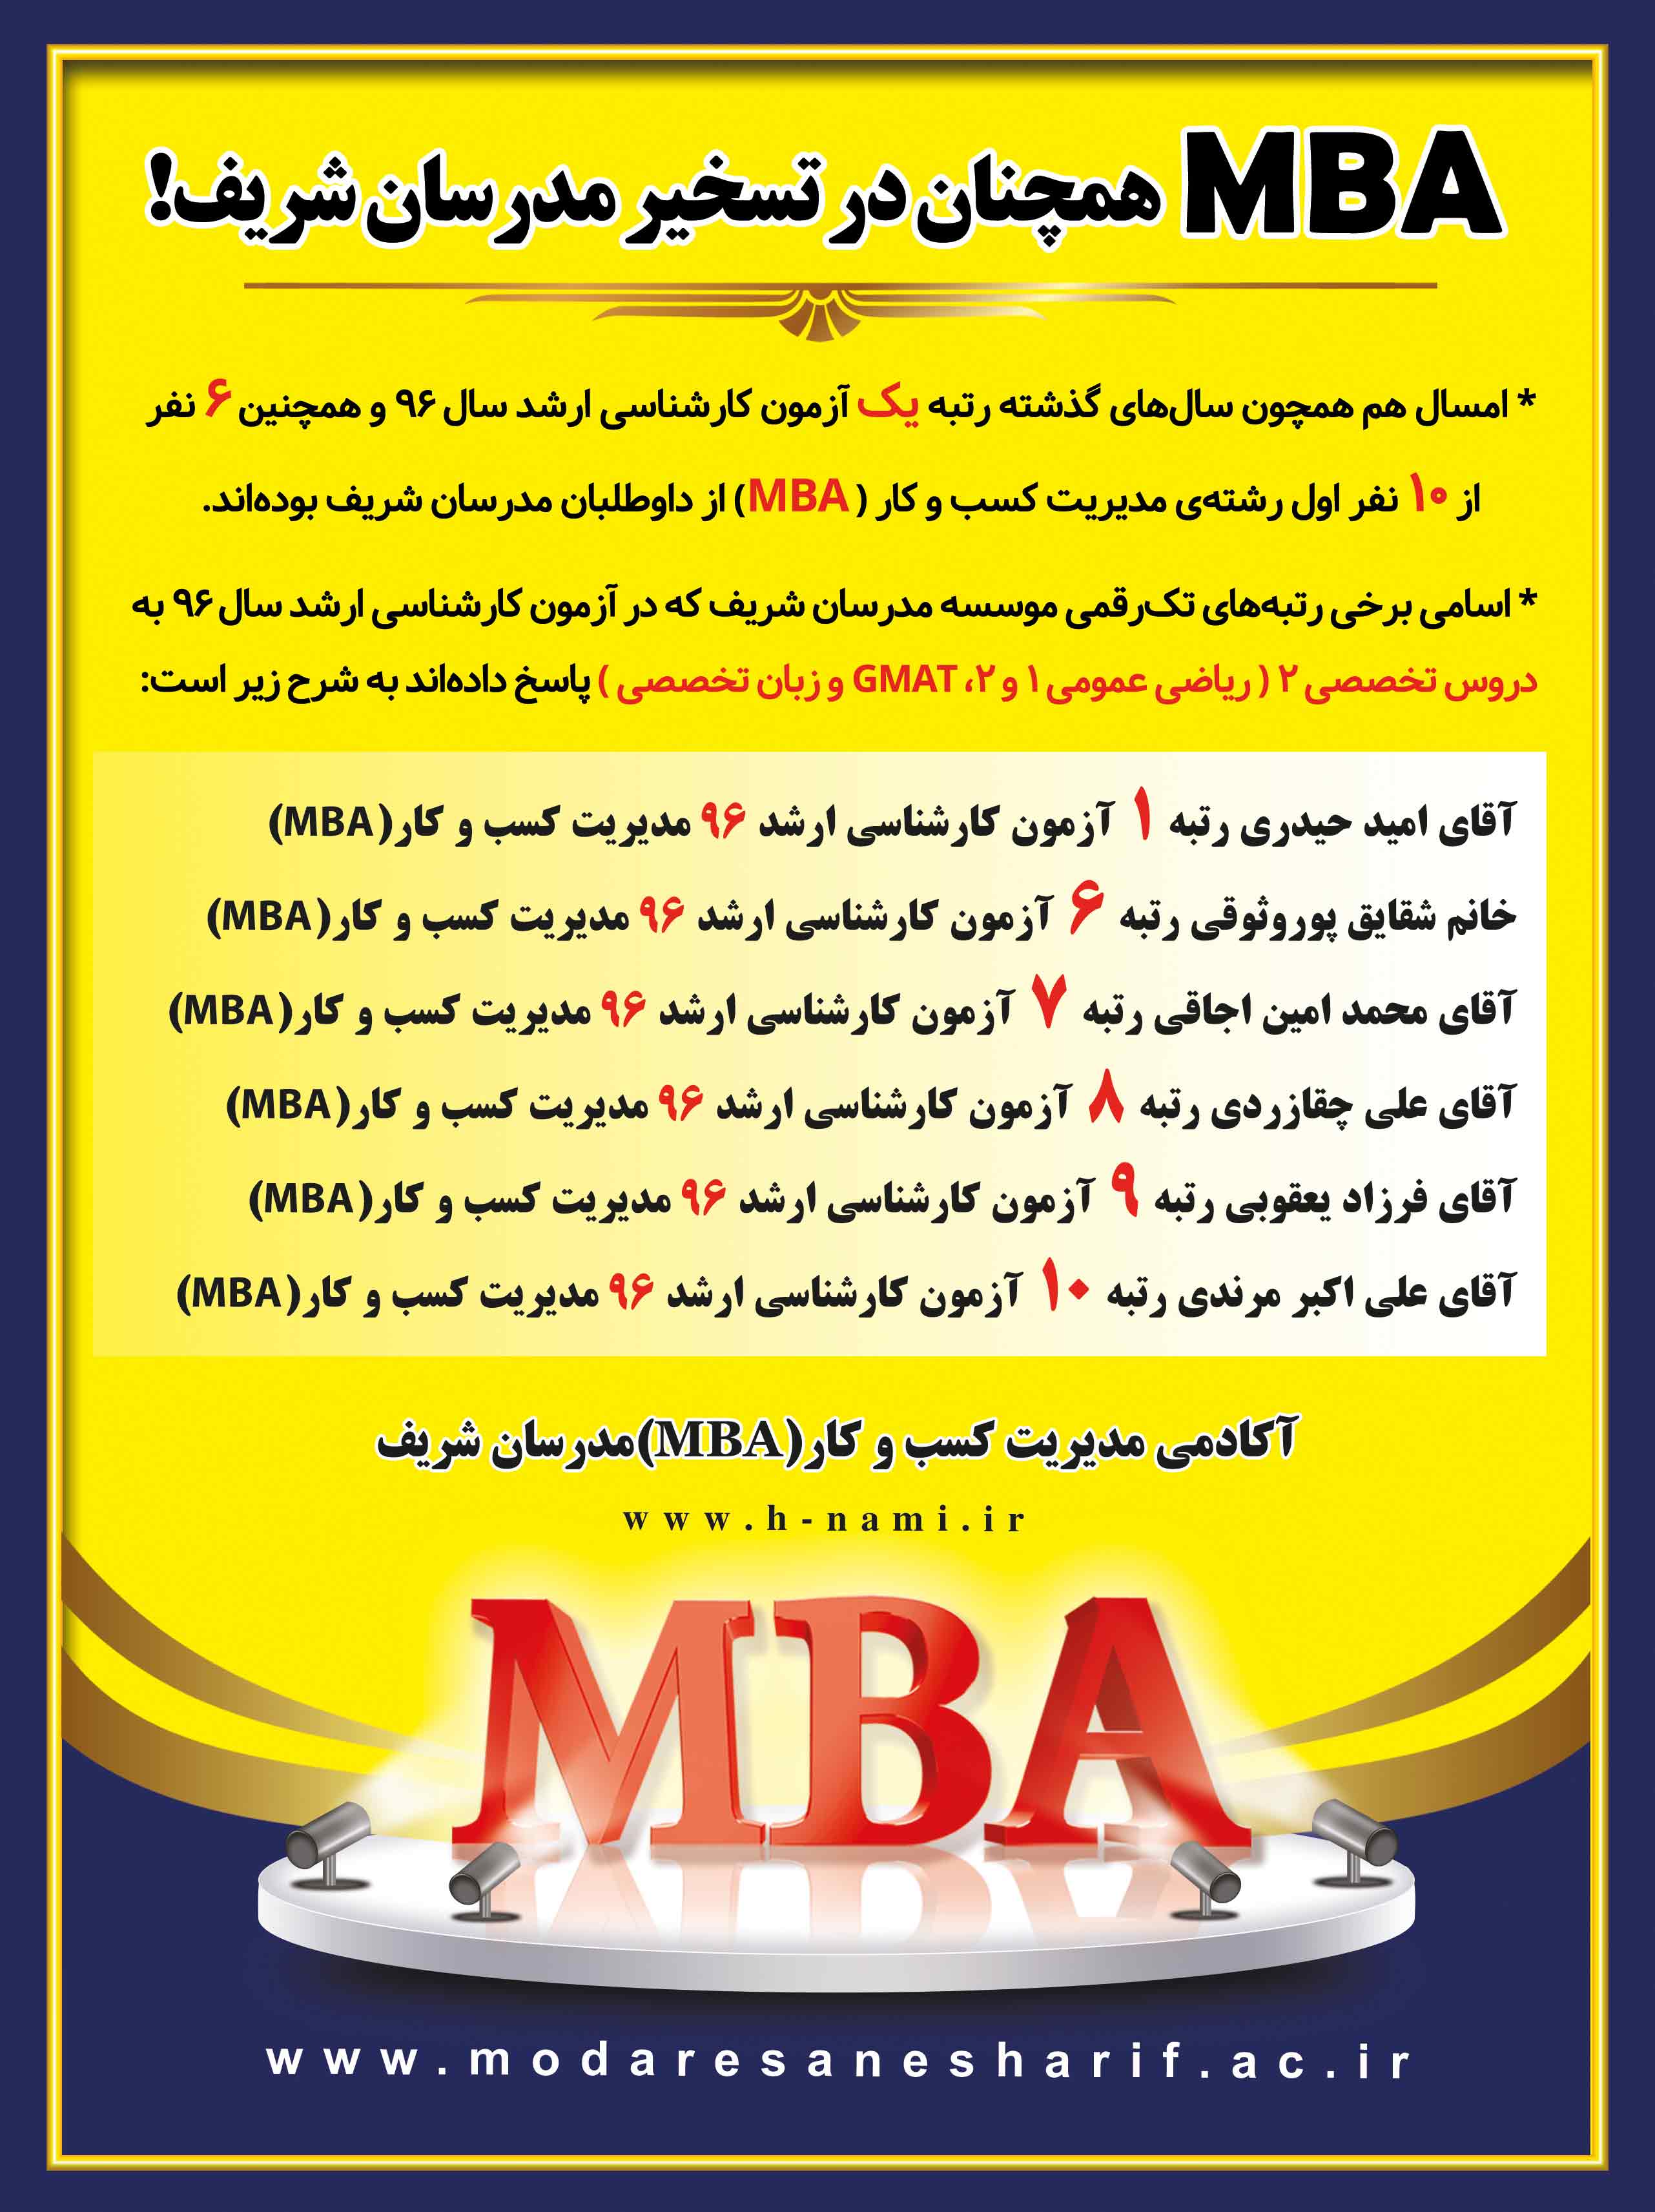 رتبه های برتر رشته مدیریت کسب و کار مدرسان شریف در سال 96(MBA)